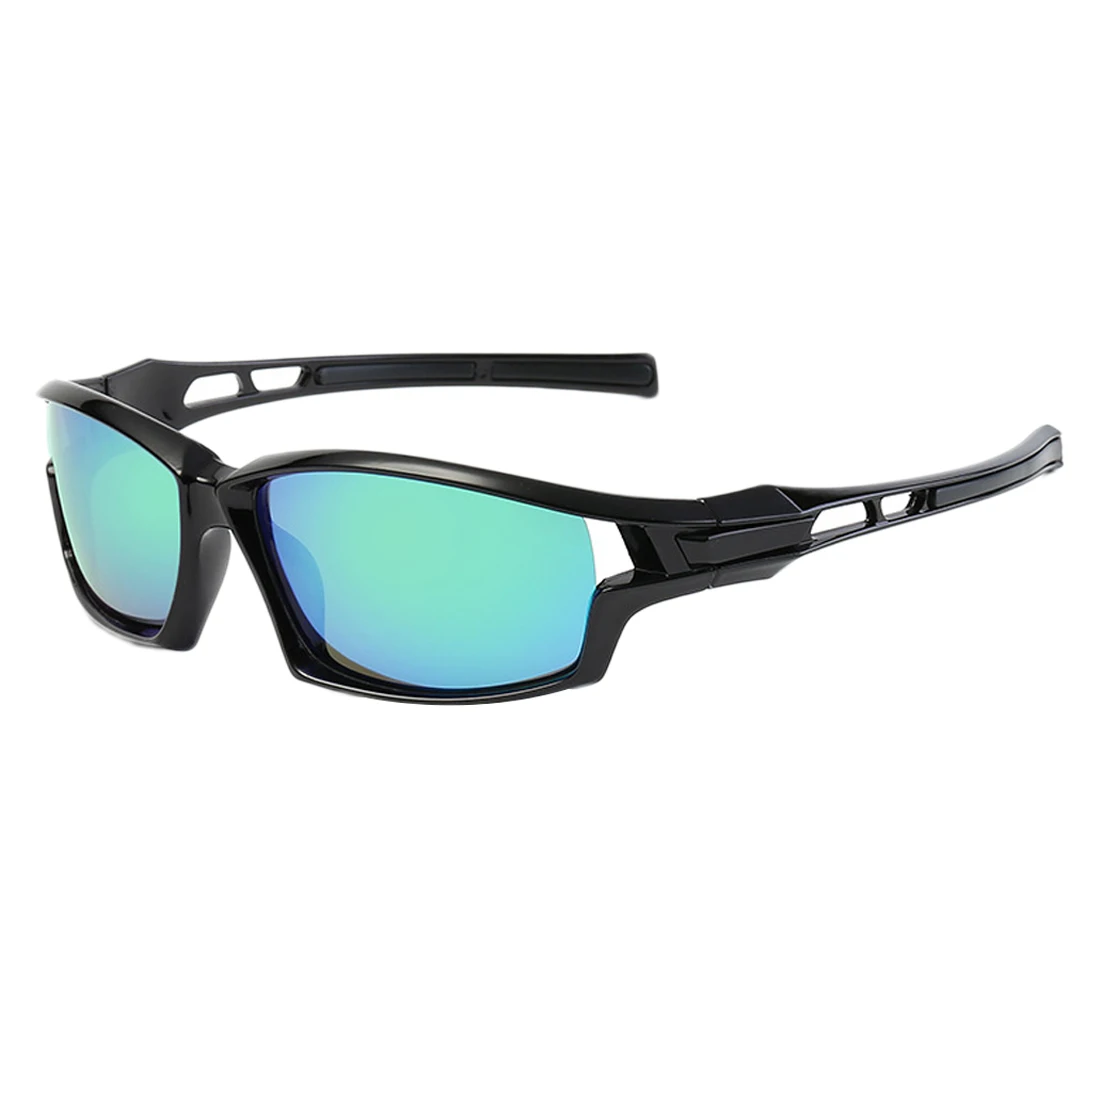 Поляризационные солнцезащитные очки для мужчин, солнцезащитные очки для пляжа, спорта на открытом воздухе, езды, вождения, мужские очки, аксессуары, очки для велосипеда